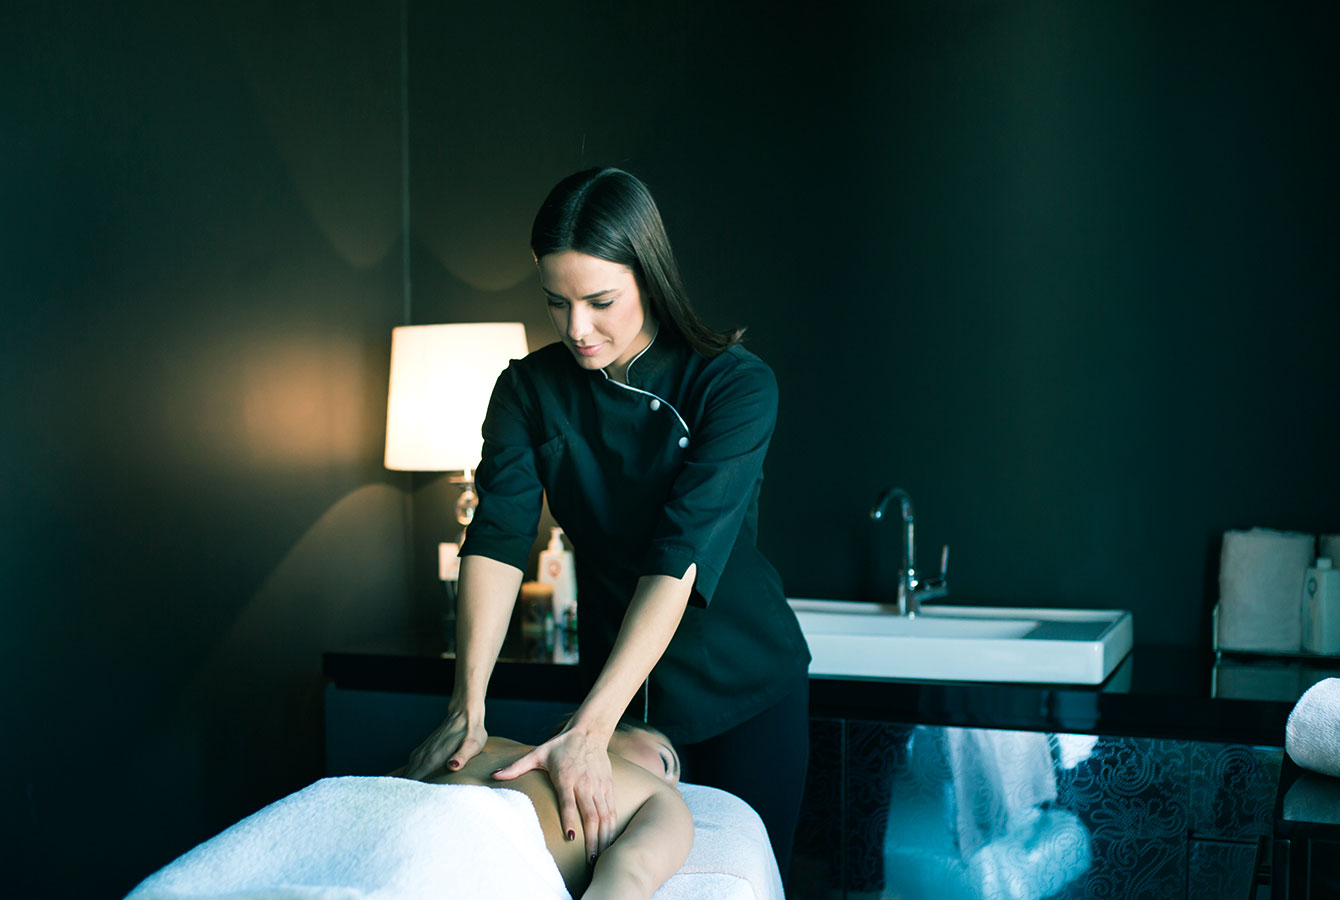 Massage therapist li jipprovdi servizz li ġie rreġistrat bl-użu tal-app Planfy.